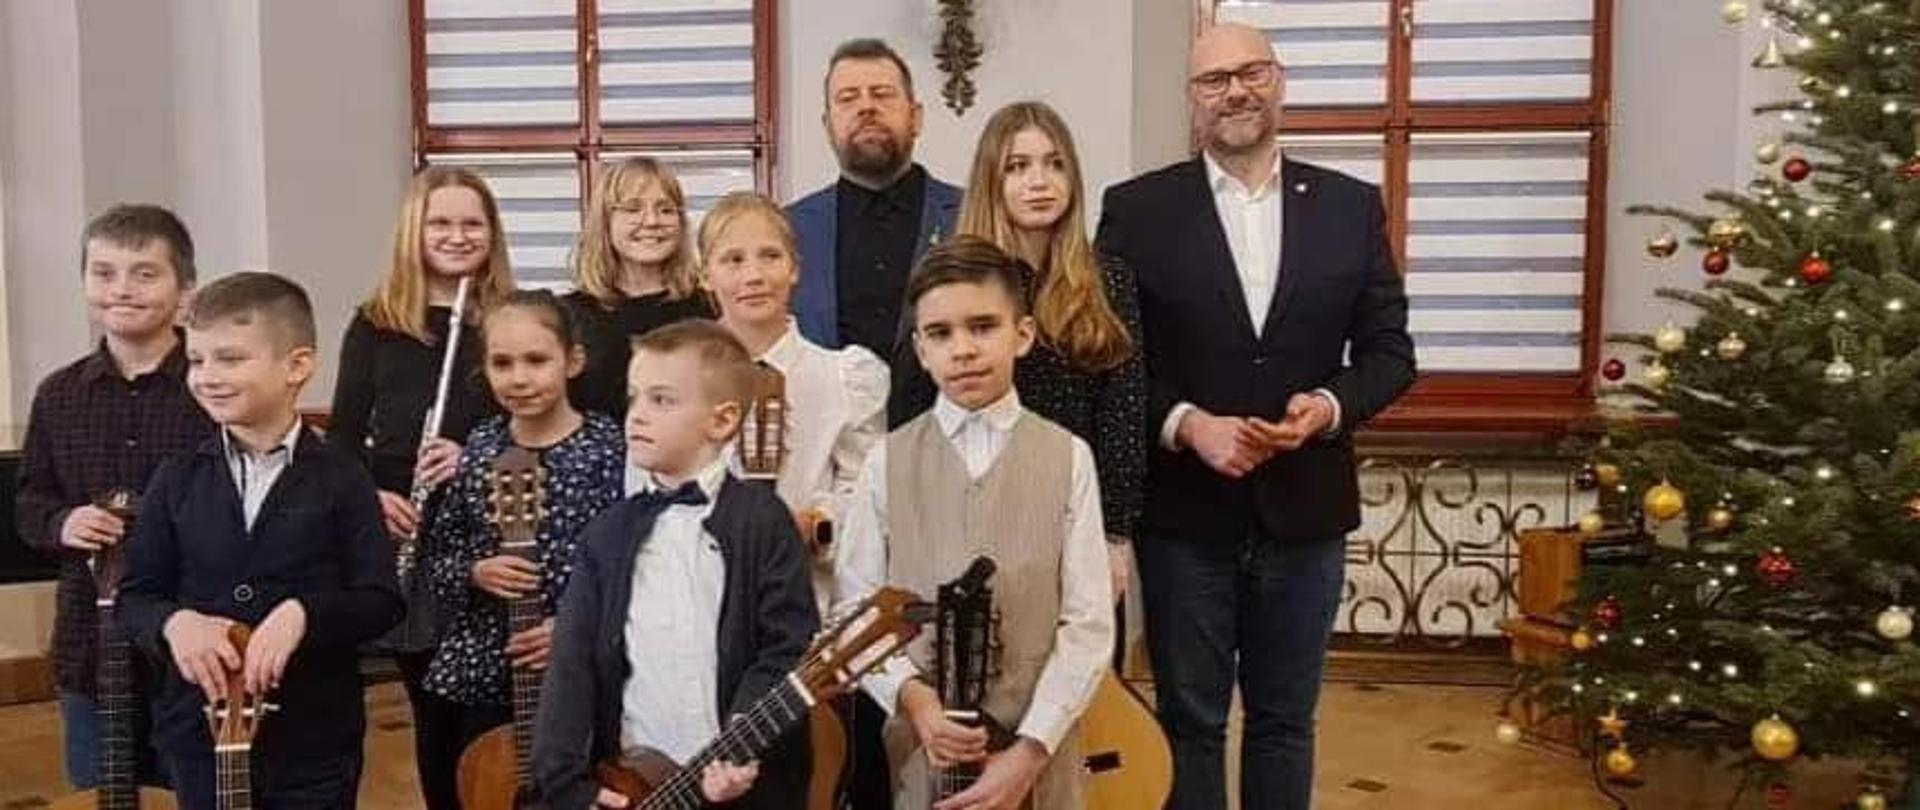 Grupa dzieci trzymająca gitary pozuje do zdjęcia grupowego wraz z nauczycielem Witoldem Kozakowskim oraz Burmistrzem miasta Kłodzka Michałem Piszko